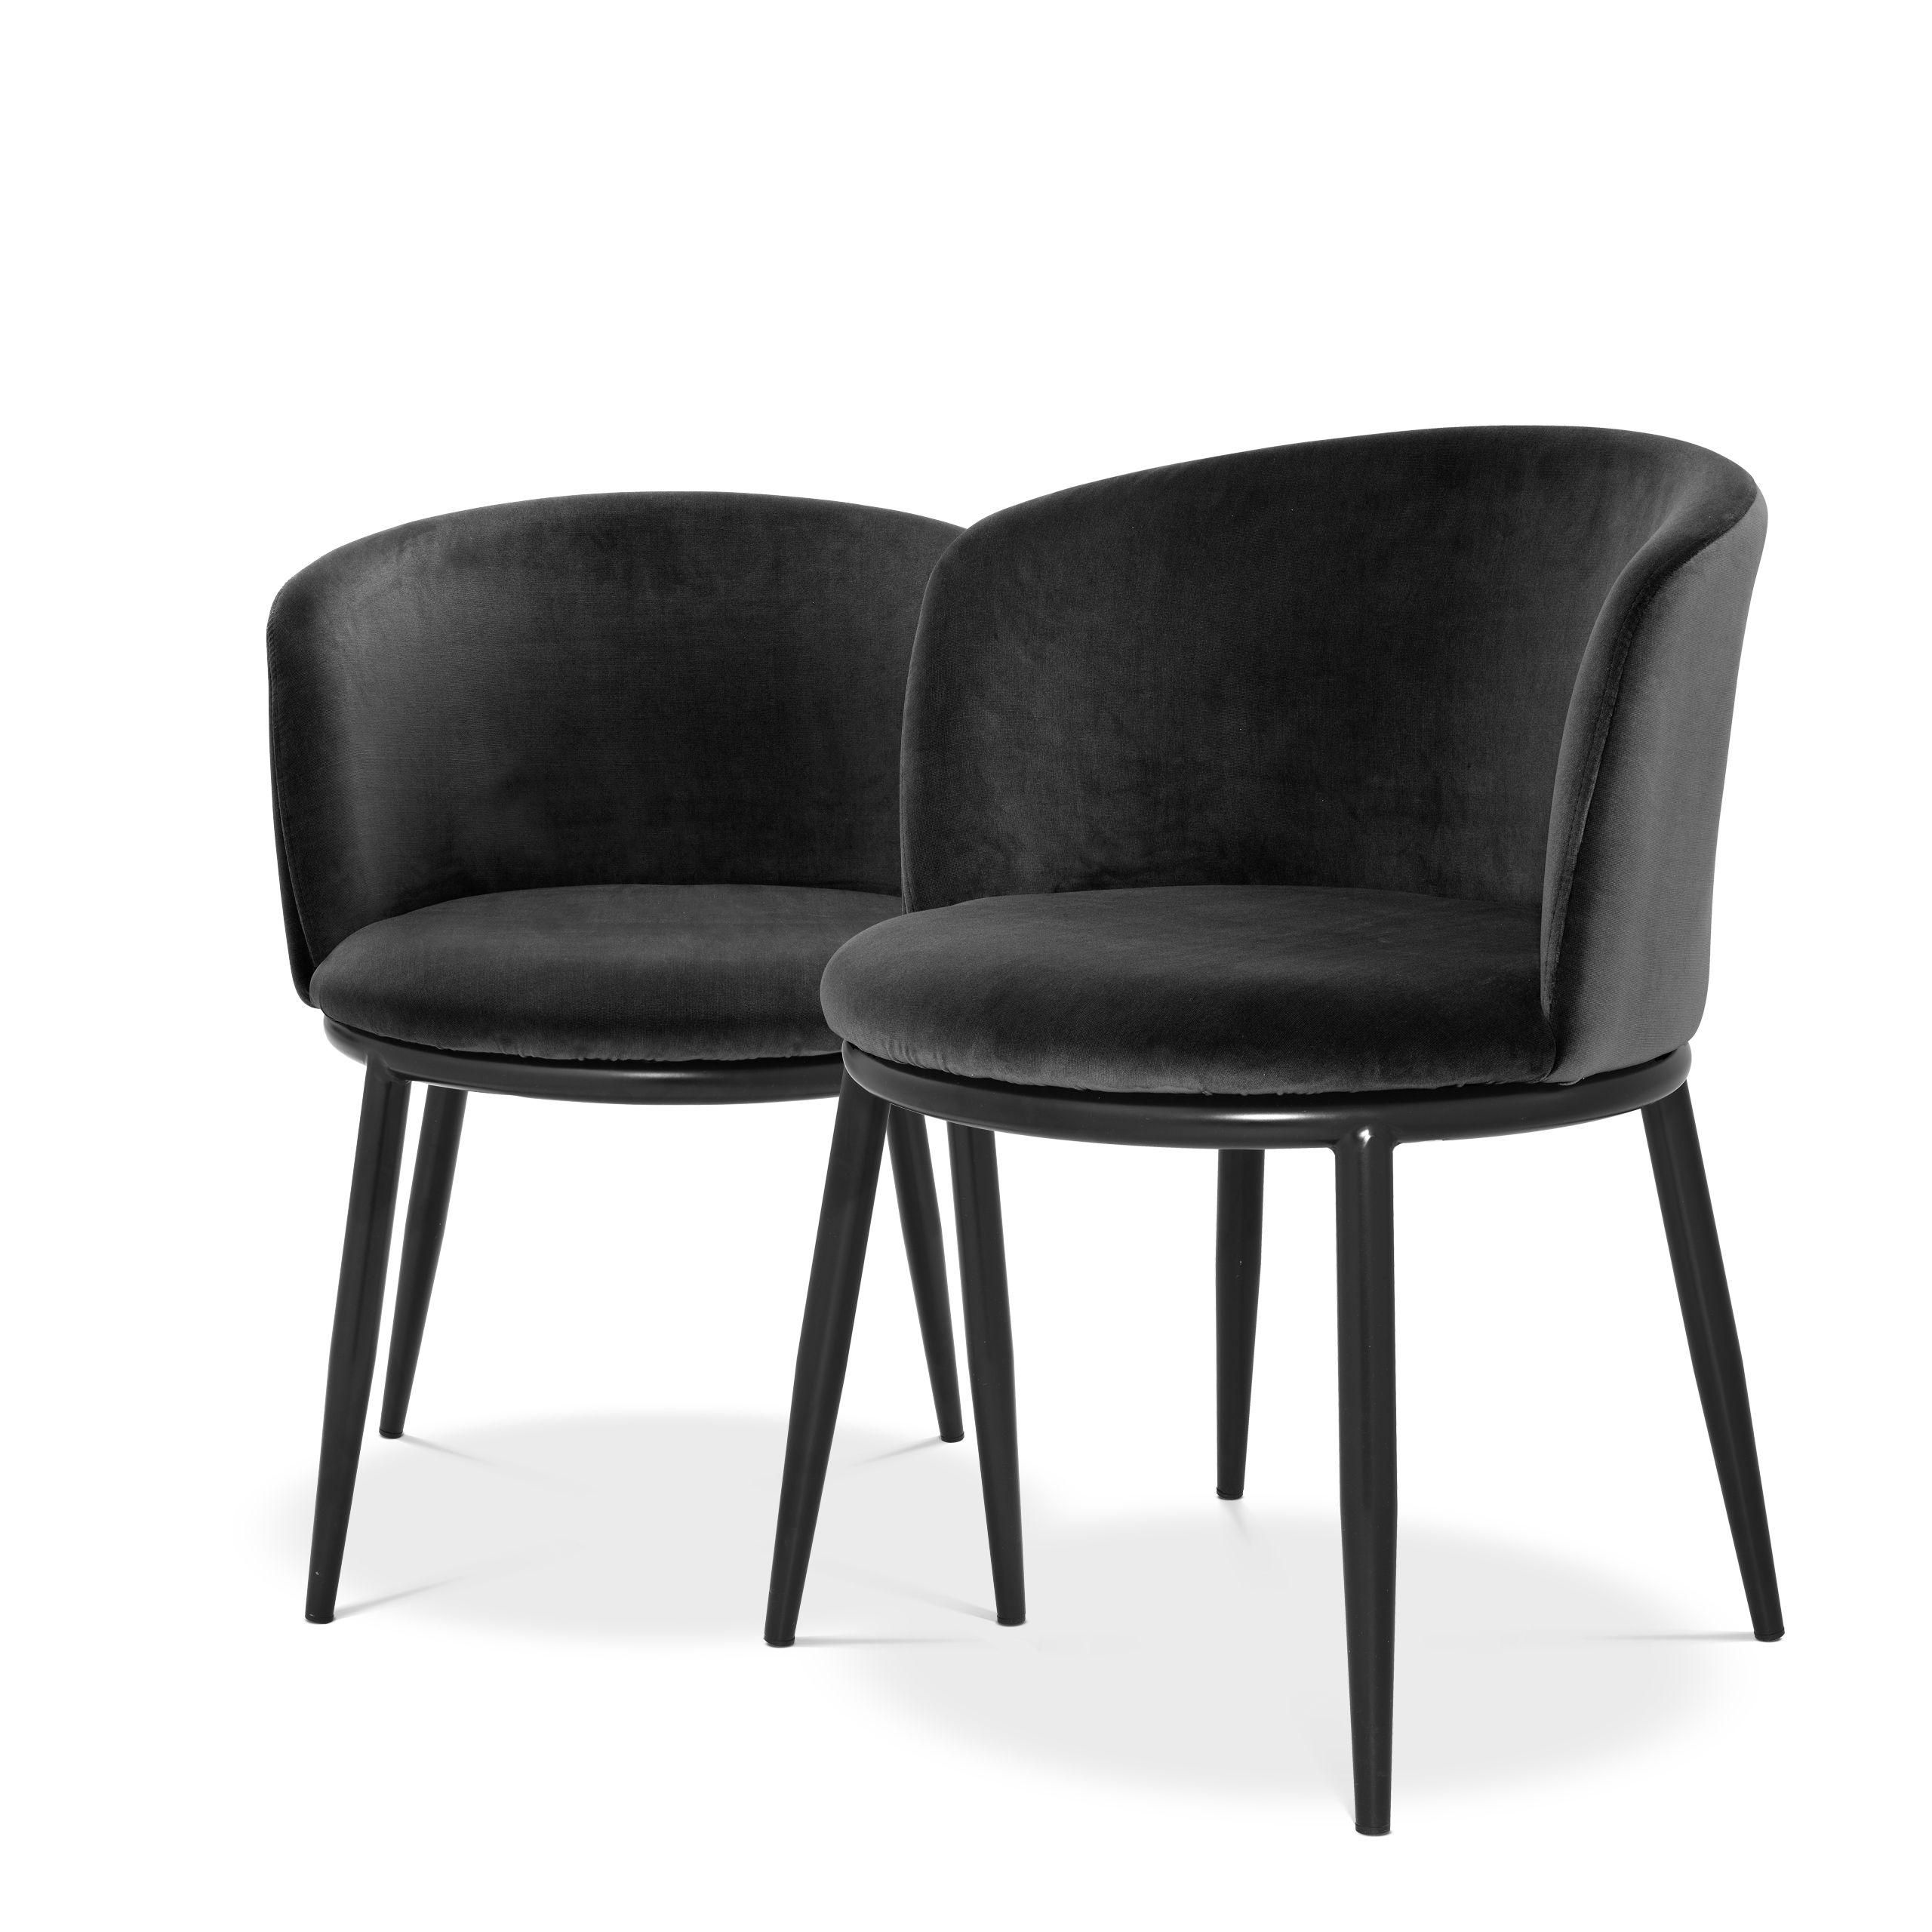 Купить Стул без подлокотника Dining Chair Filmore set of 2 в интернет-магазине roooms.ru